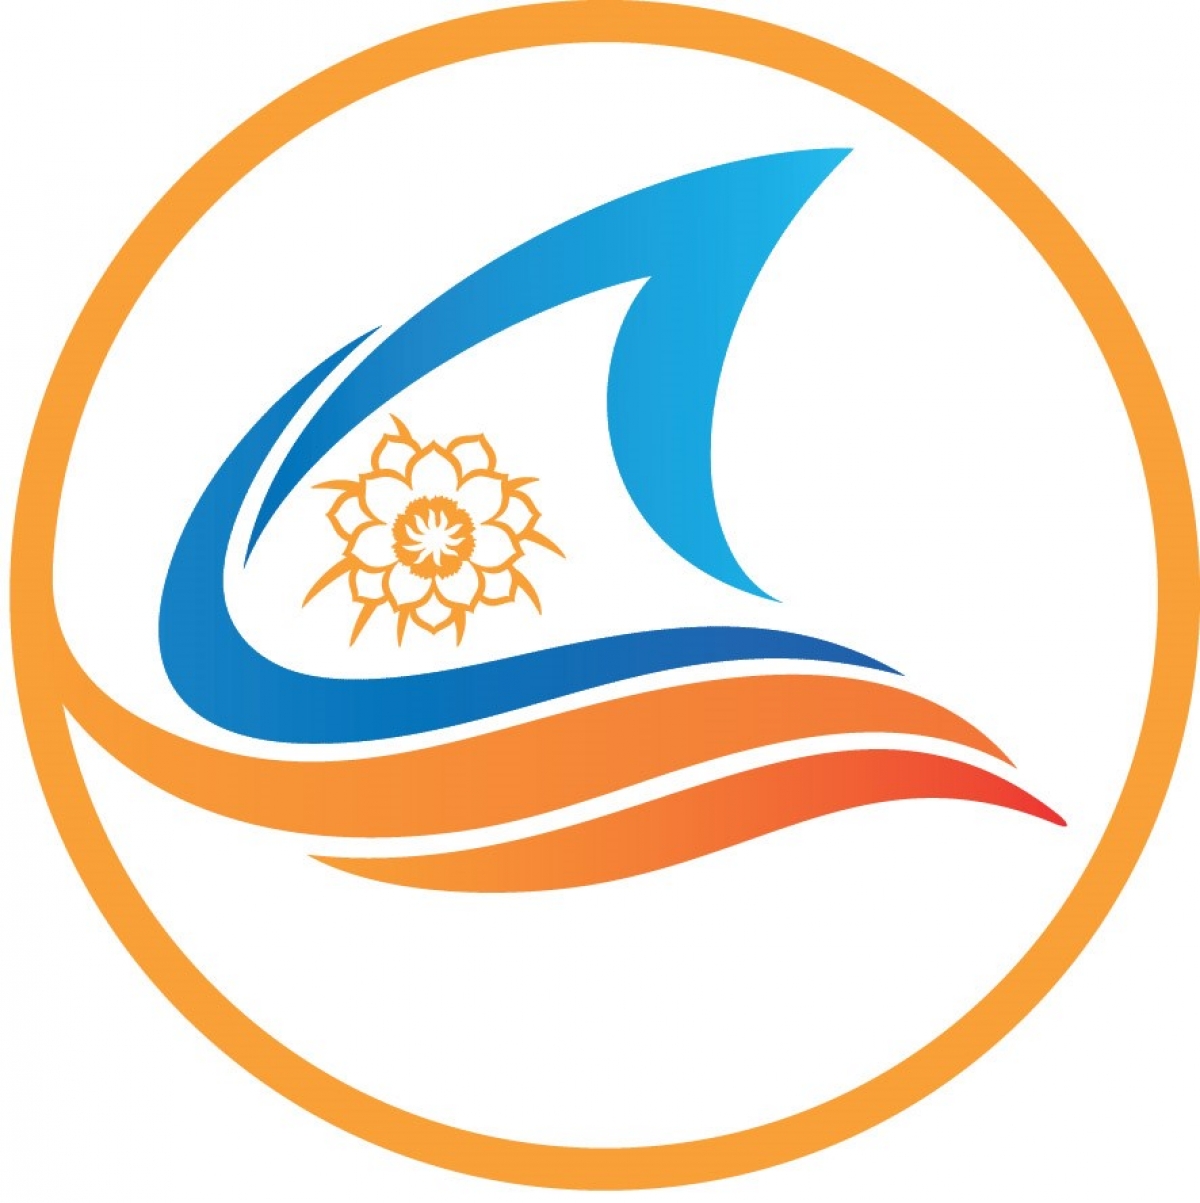 Logo năm Du lịch quốc gia 2023: Bình Thuận - Hội tụ xanh